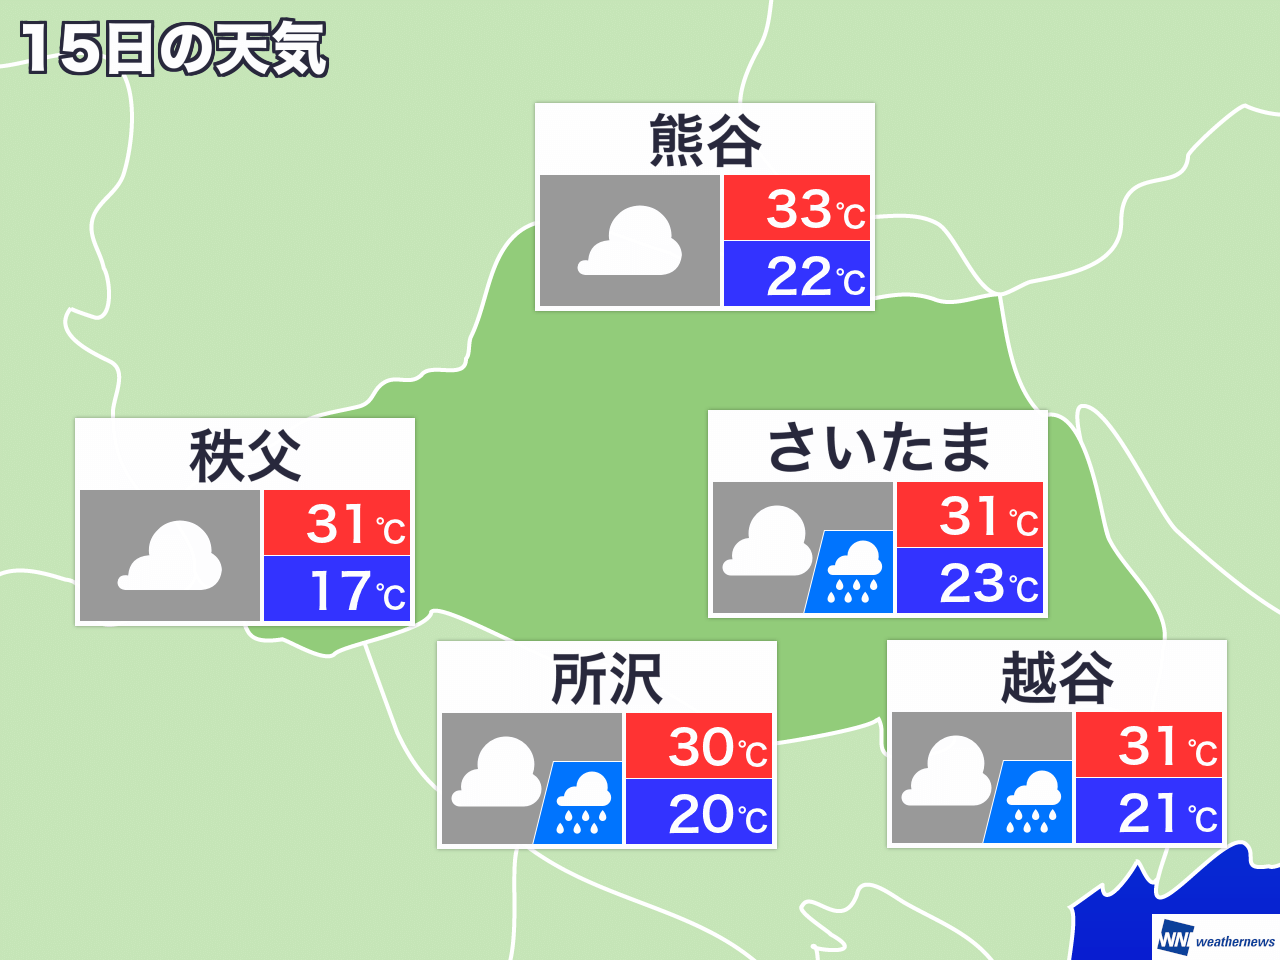 5月31日 月 埼玉県の今日の天気 ウェザーニュース